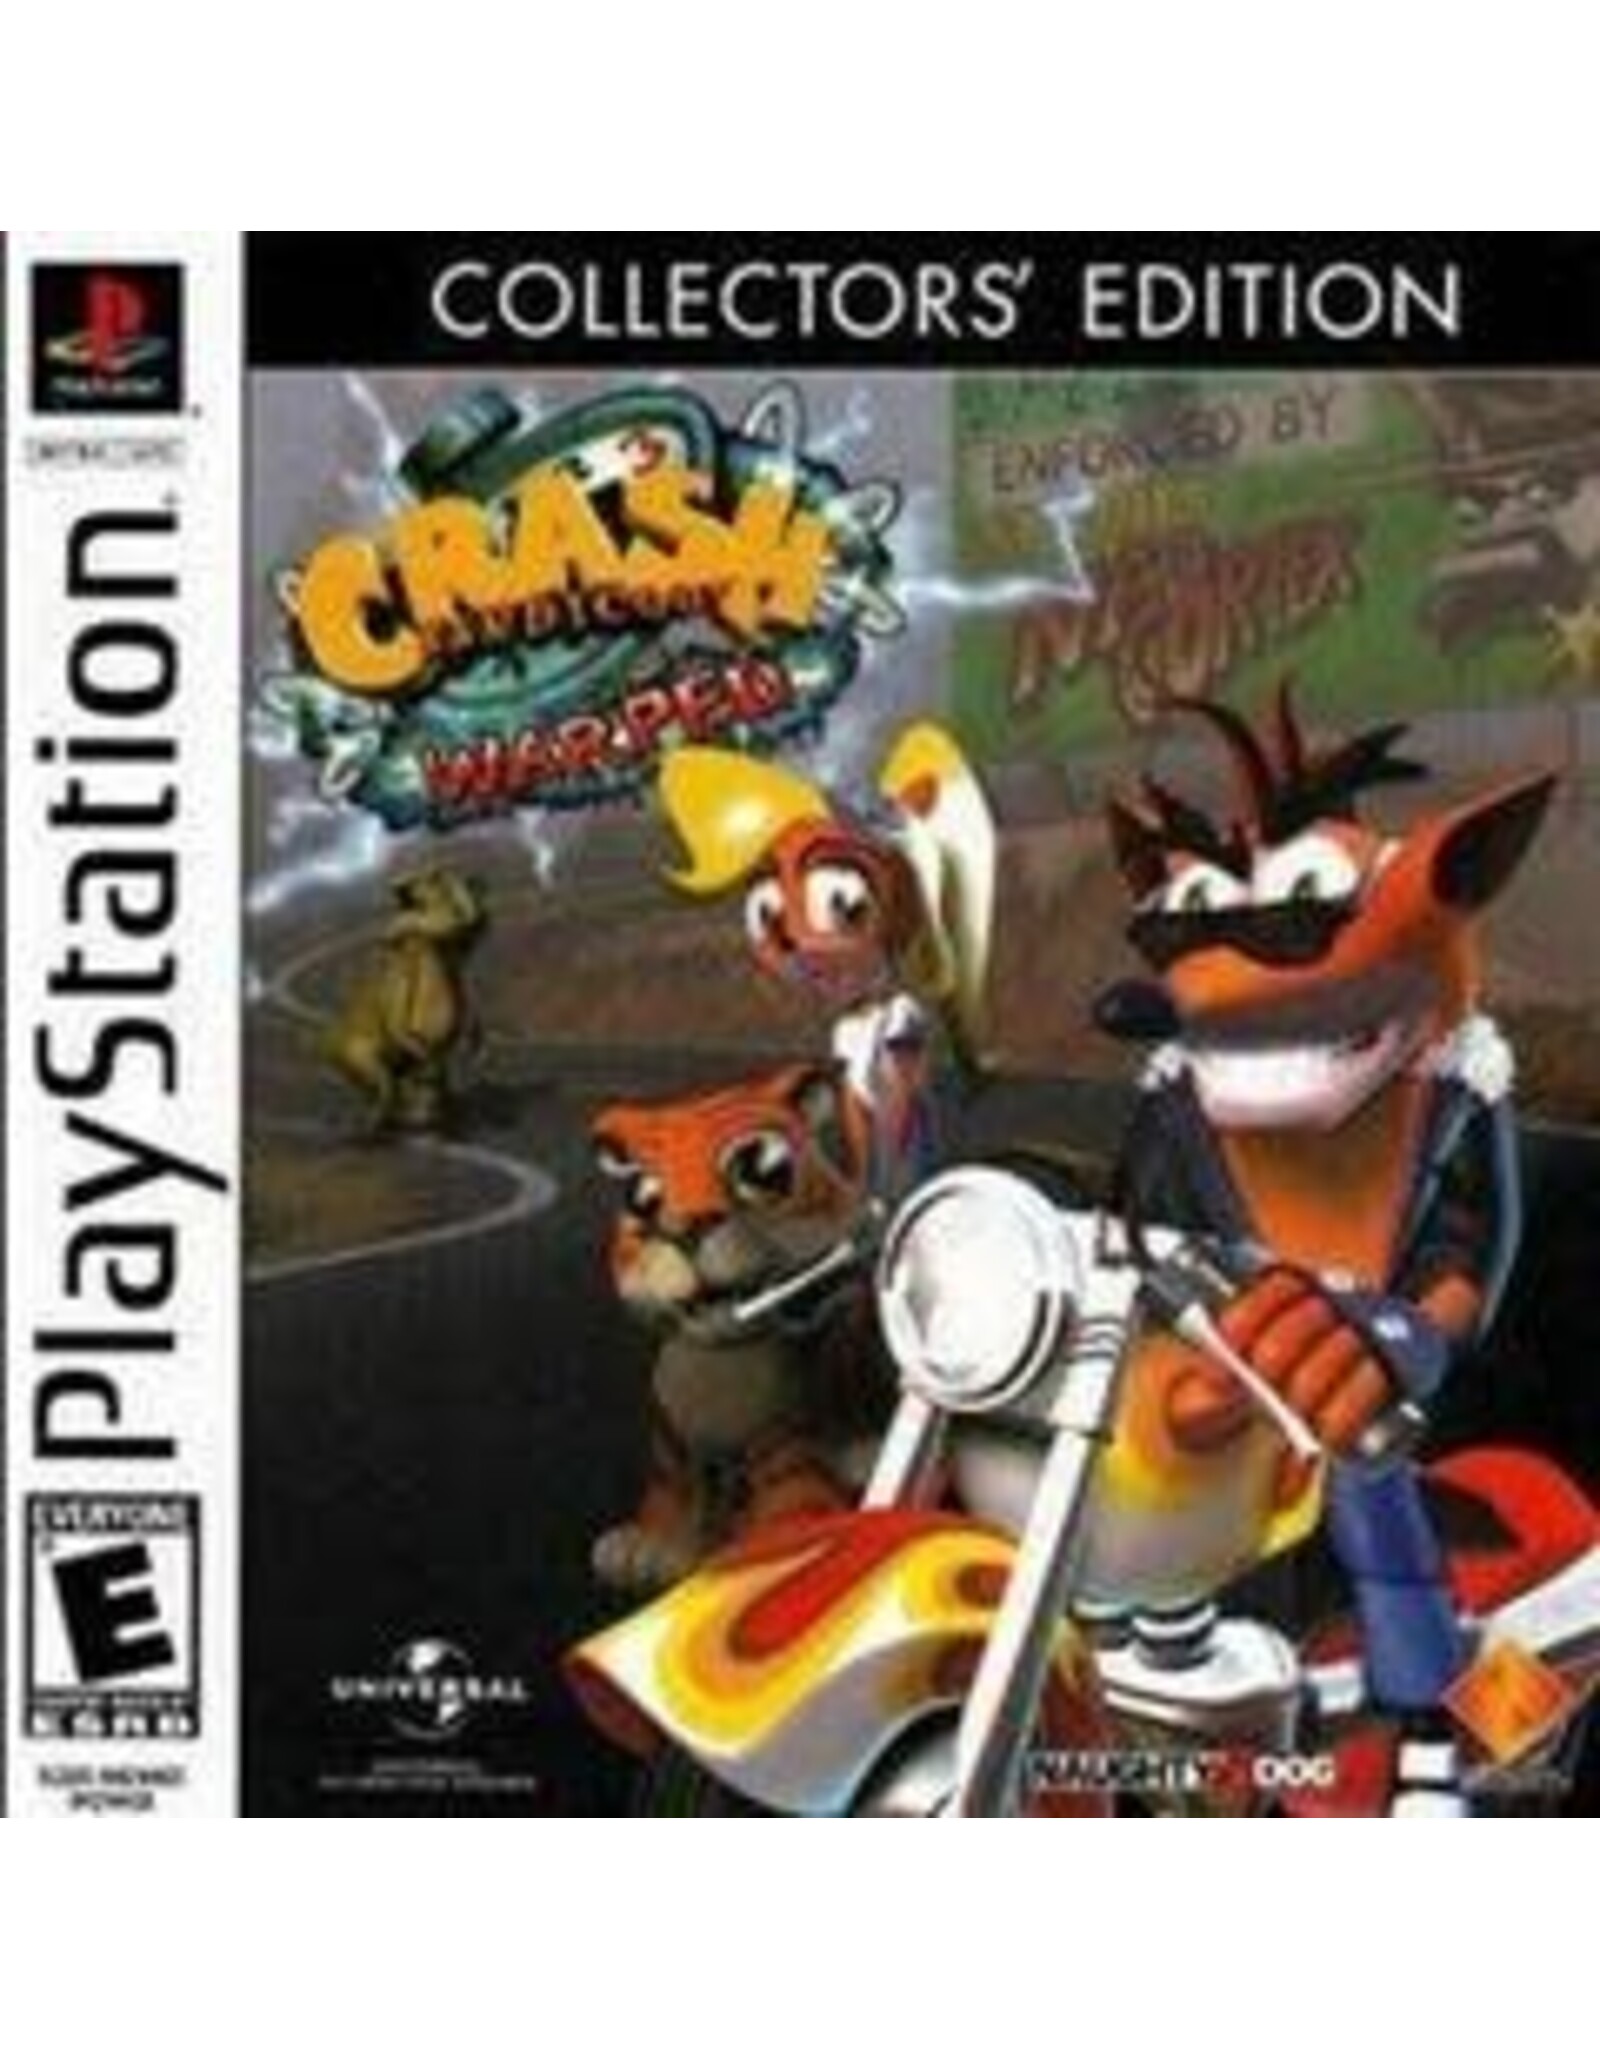 Playstation Crash Bandicoot Warped (Collector's Edition, CiB)